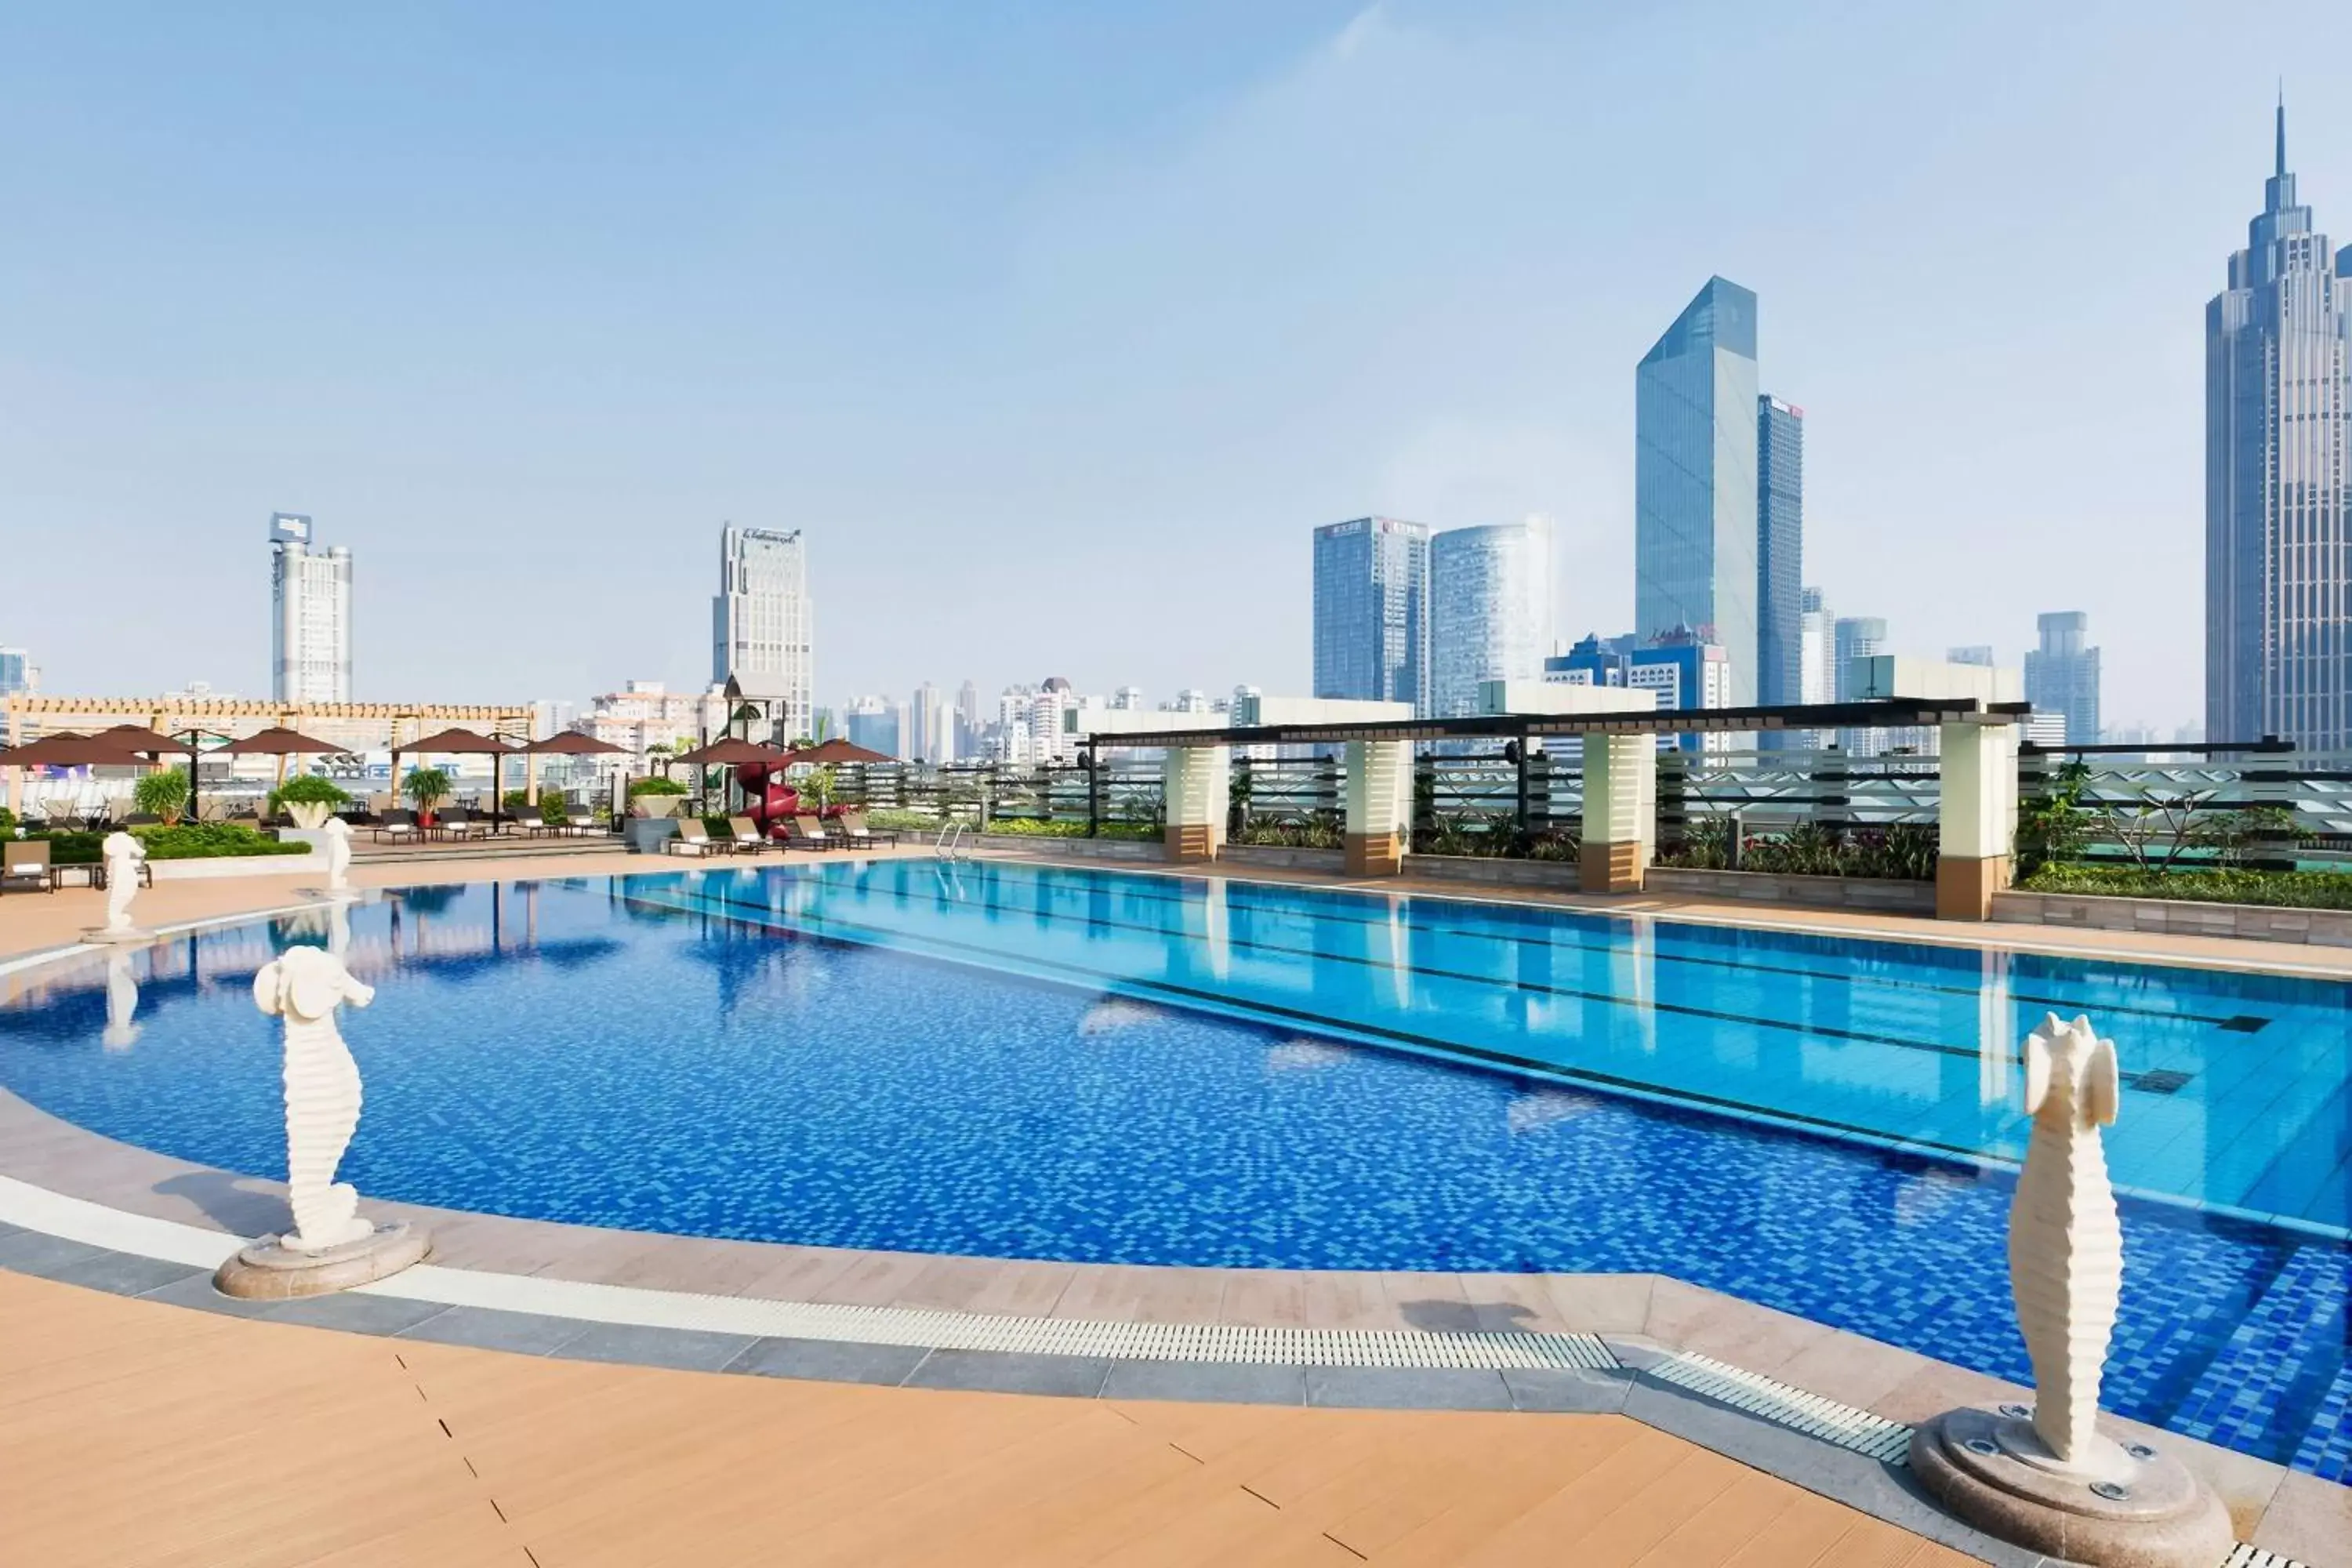 Swimming Pool in Sheraton Guangzhou Hotel